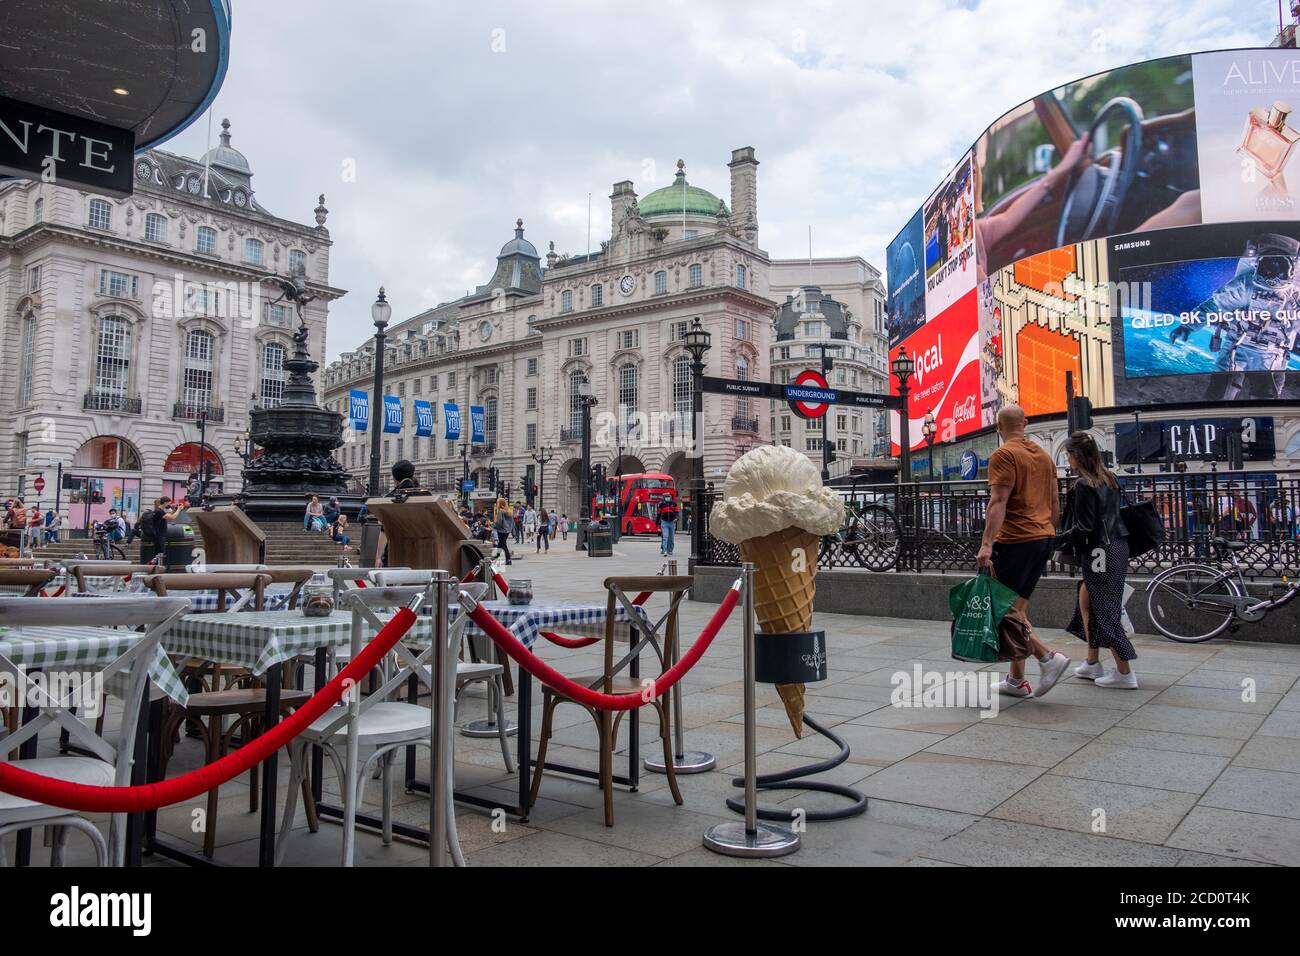 Londres- Agosto de 2020: Tranquila escena callejera de Londres en Piccadilly Circus, casi vacía debido a los efectos del coronavirus Foto de stock